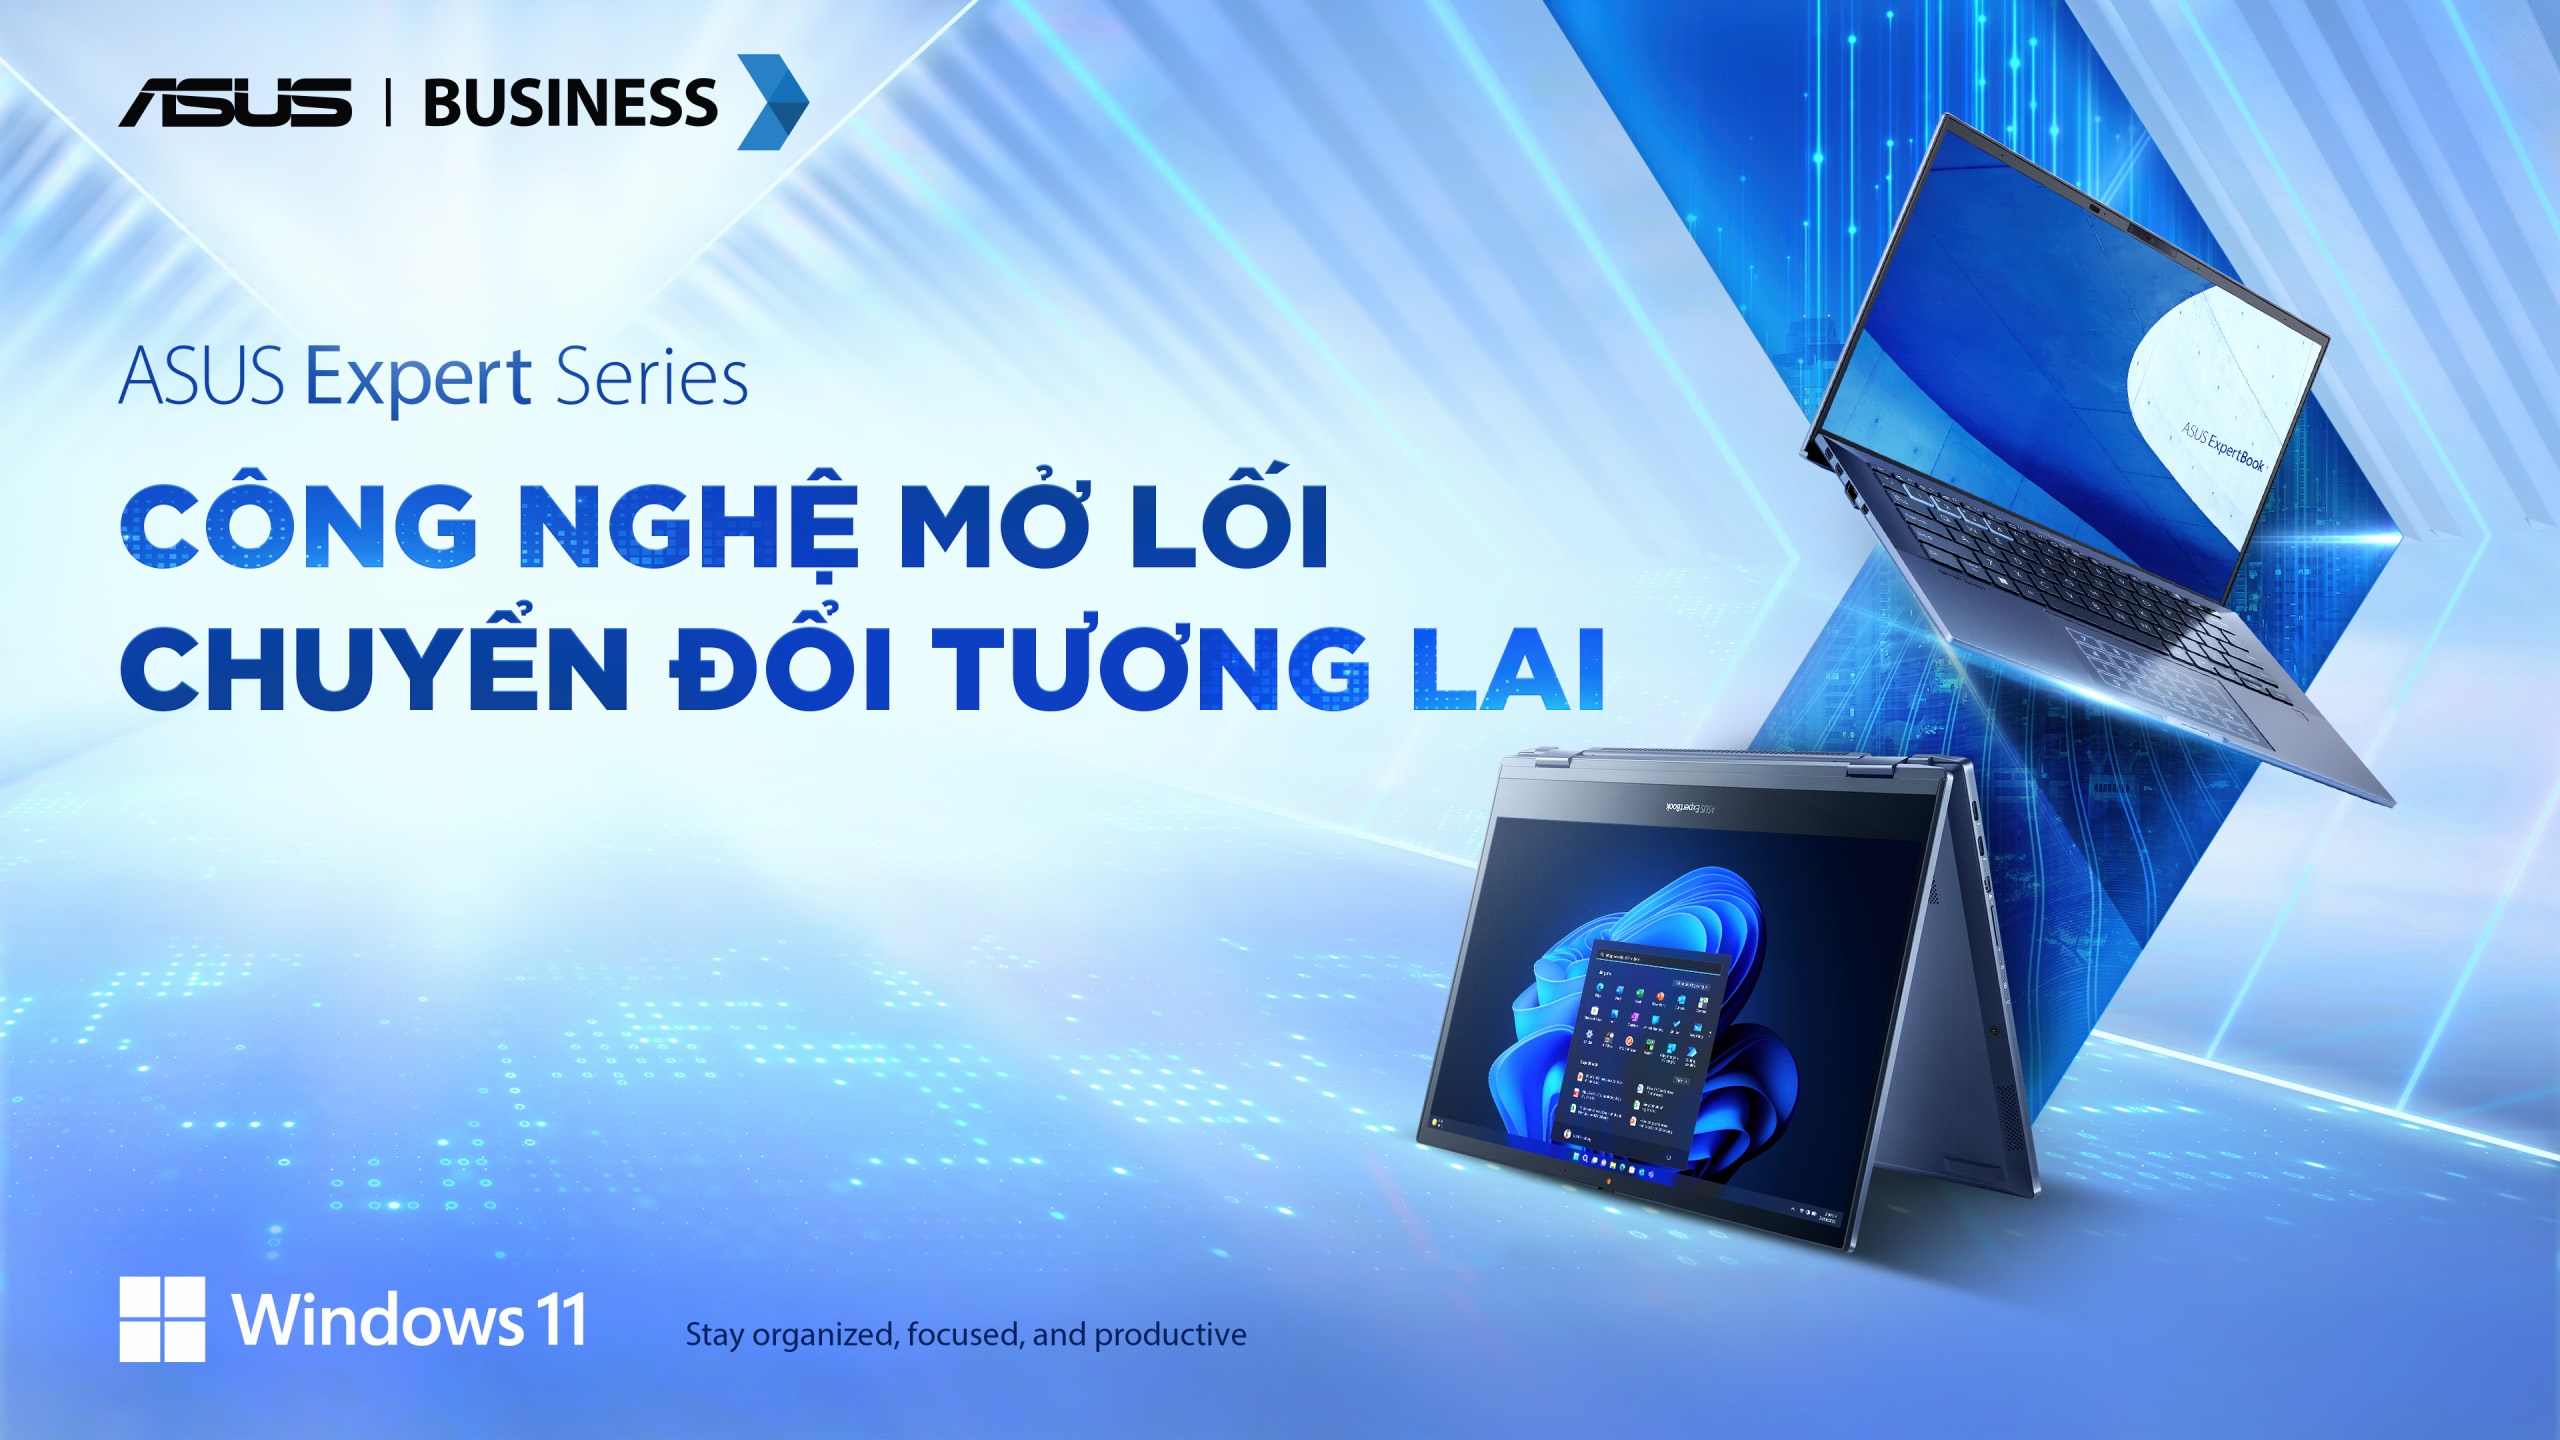 ASUS Việt Nam tổ chức sự kiện “Công nghệ mở lối – Chuyển đổi tương lai” giới thiệu dải Expert Series với vi xử lý Intel thế hệ mới